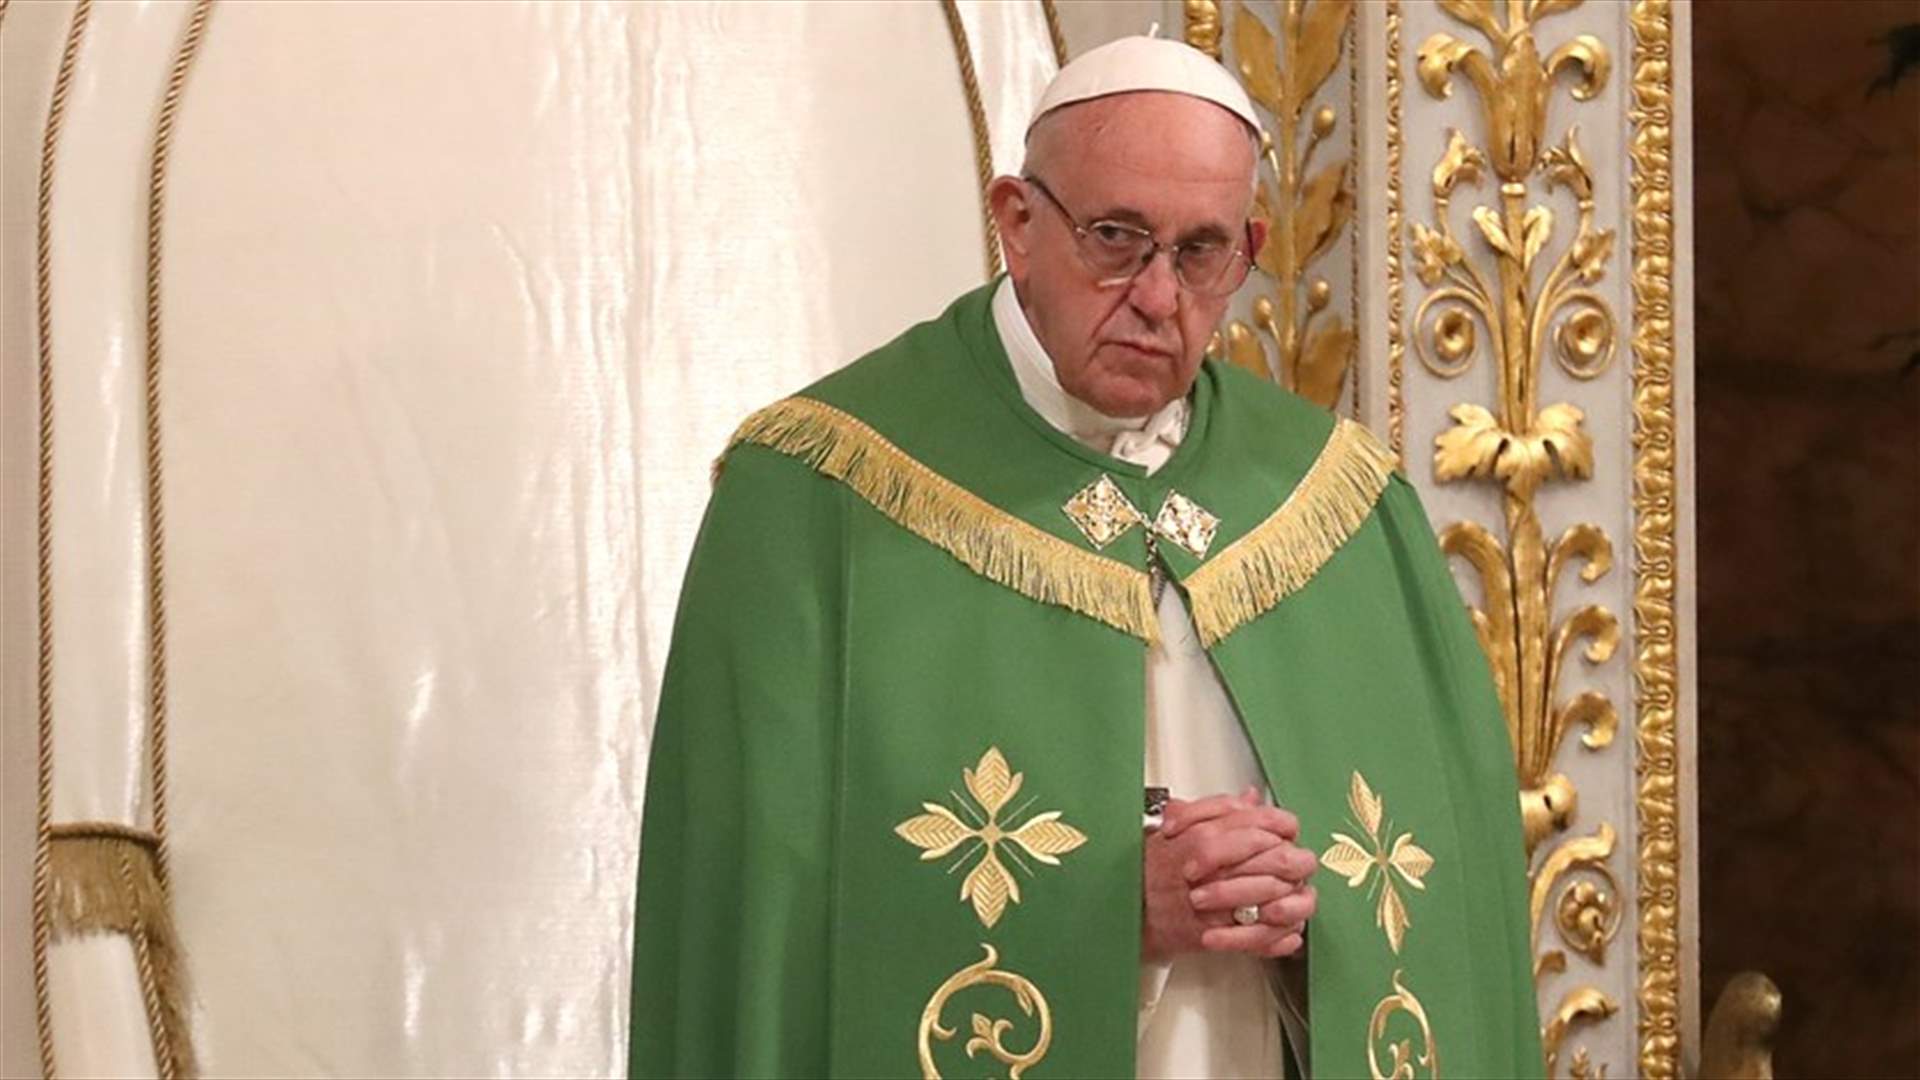 البابا فرنسيس يعرب عن ألمه لهجوم بوغوتا وغرق مهاجرين في البحر المتوسط